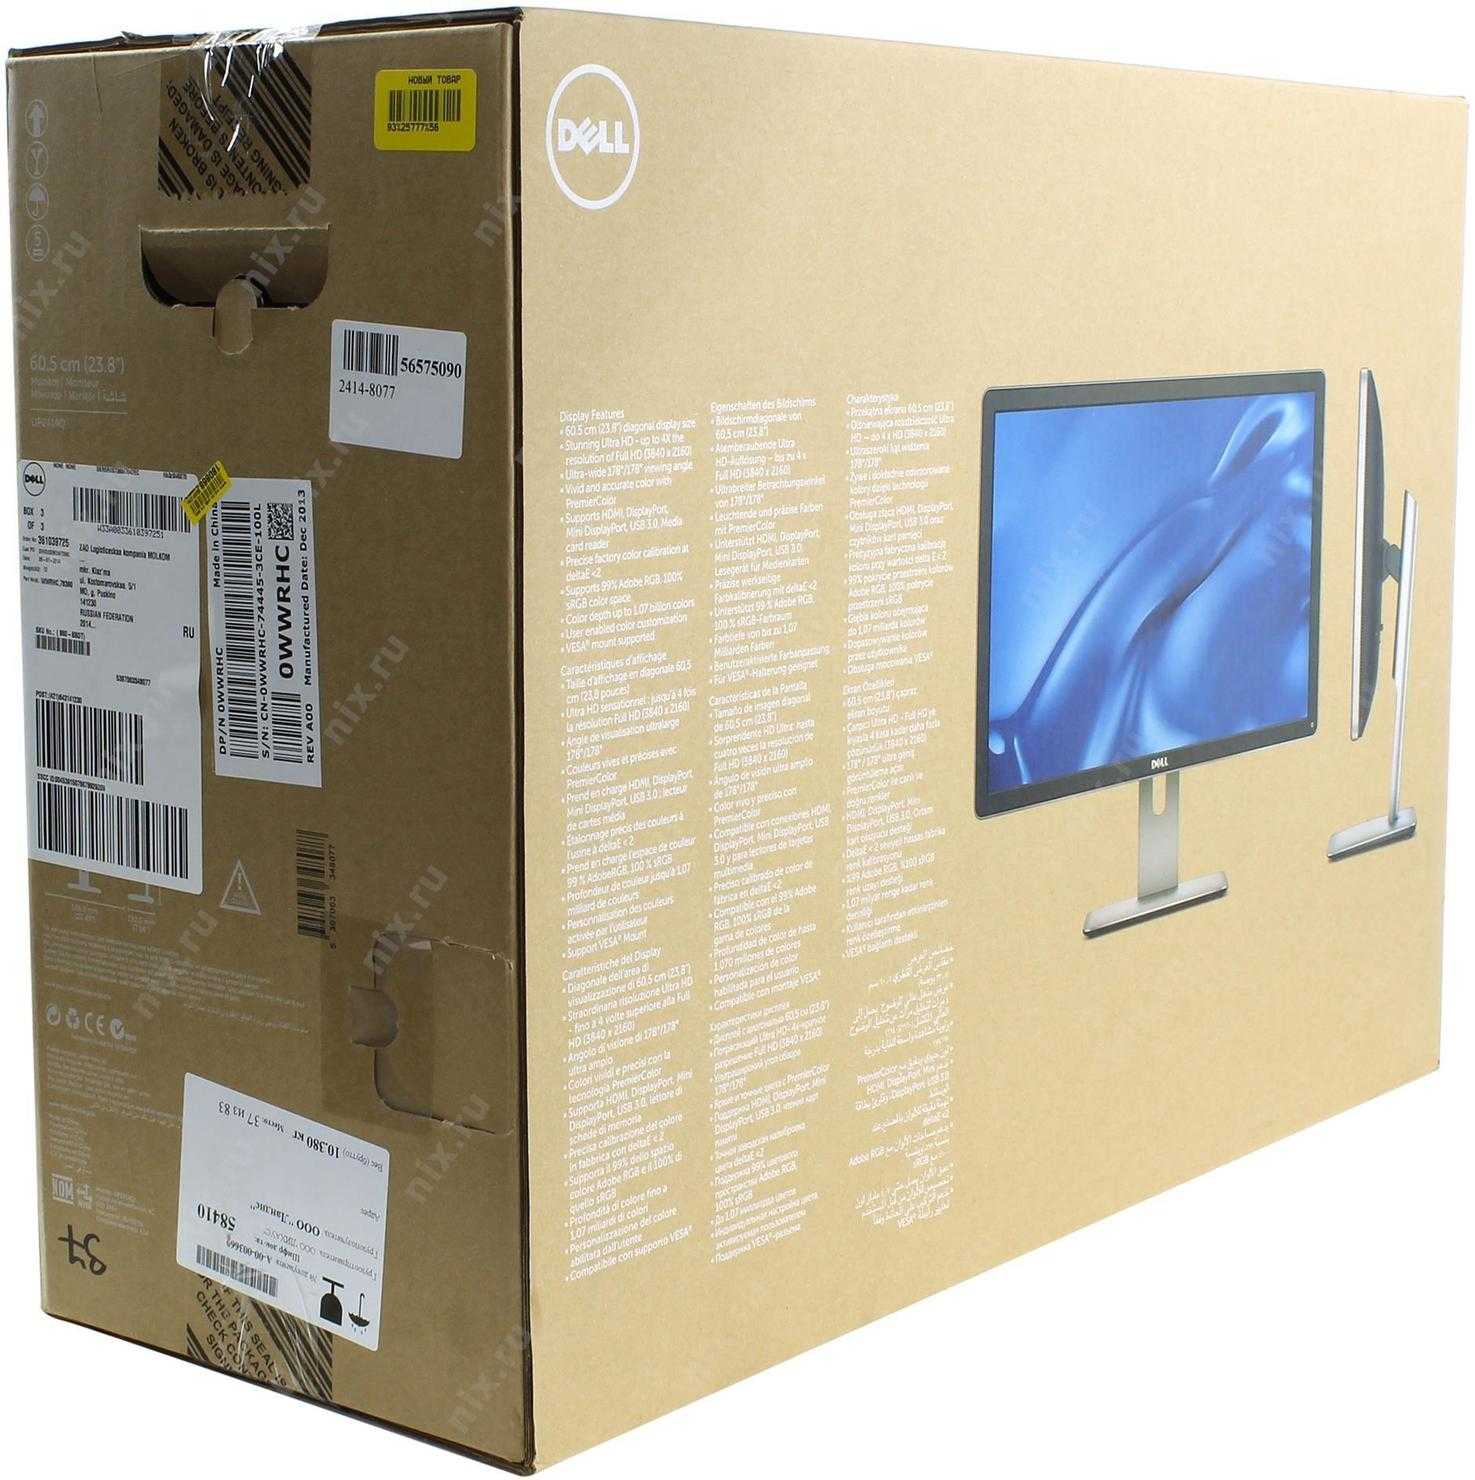 Dell up2414q - купить , скидки, цена, отзывы, обзор, характеристики - мониторы